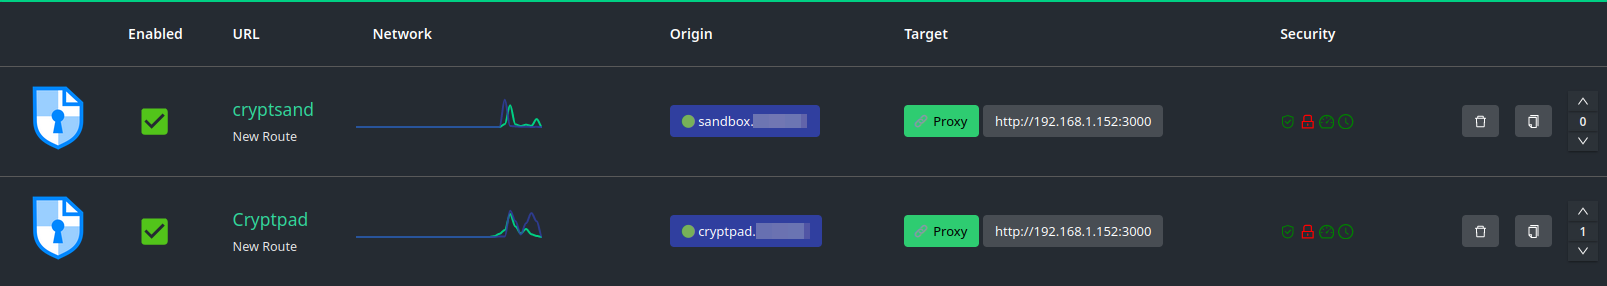 Installer CryptPad avec Docker